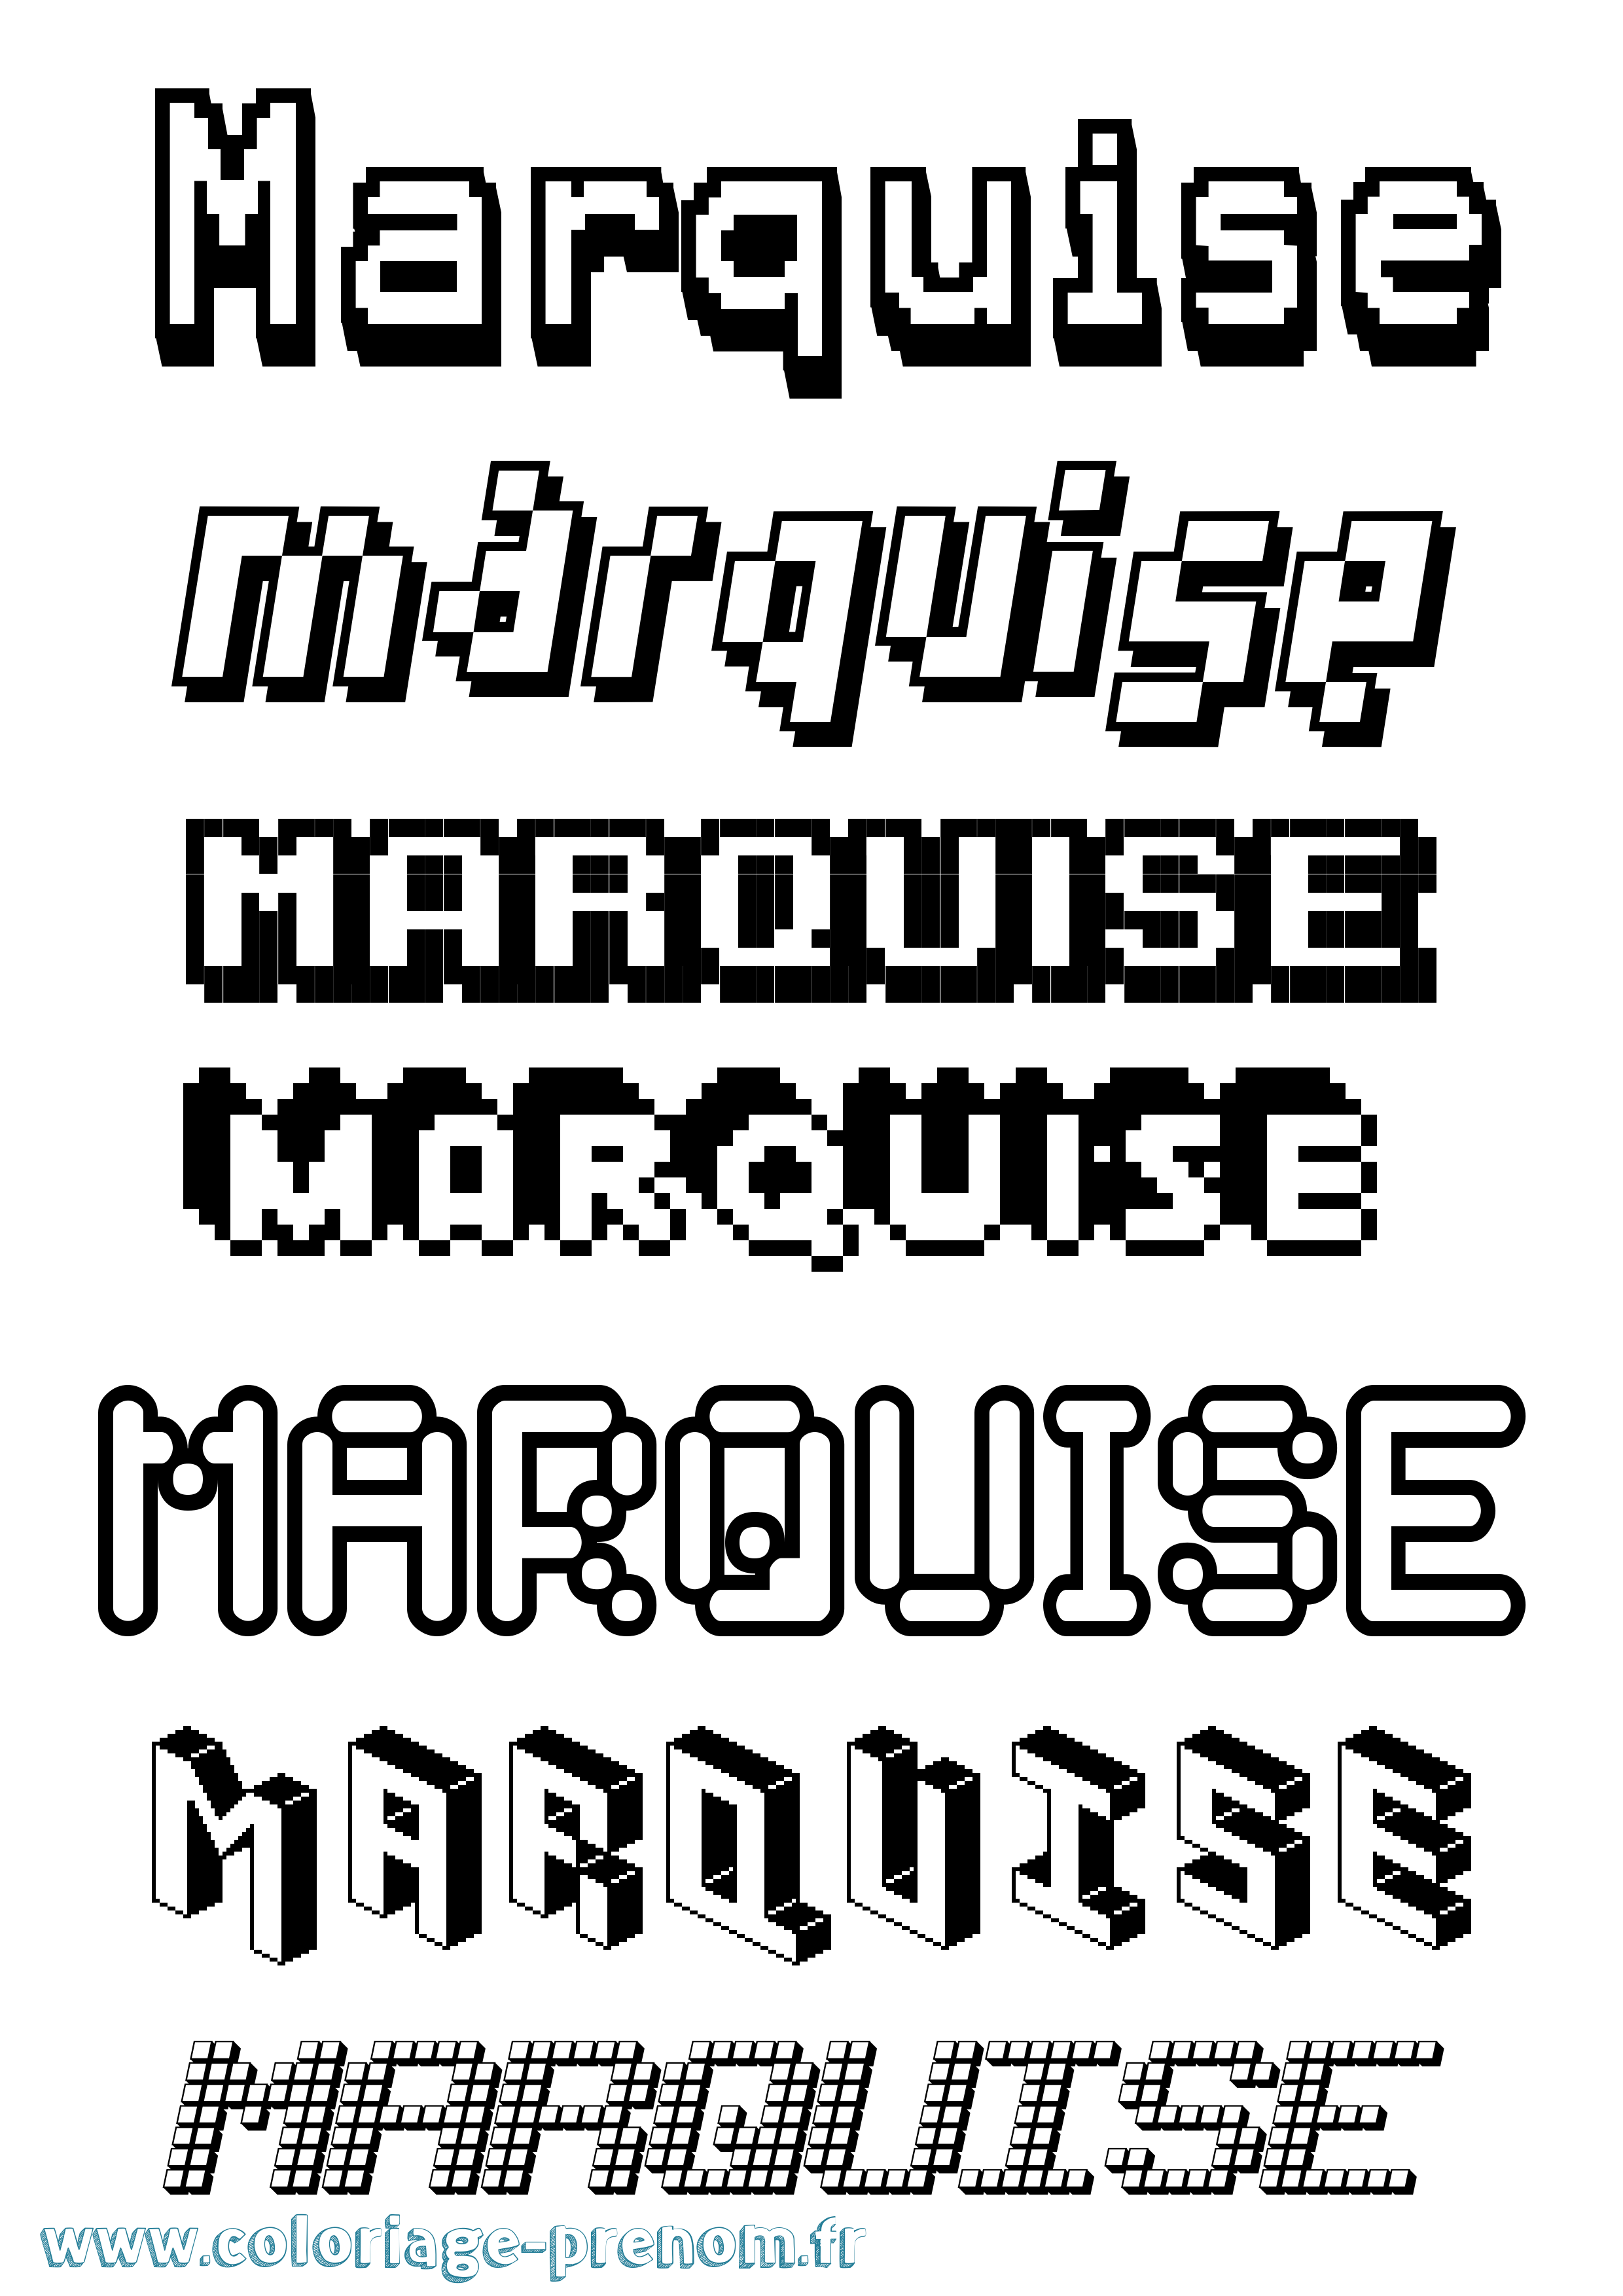 Coloriage prénom Marquise Pixel